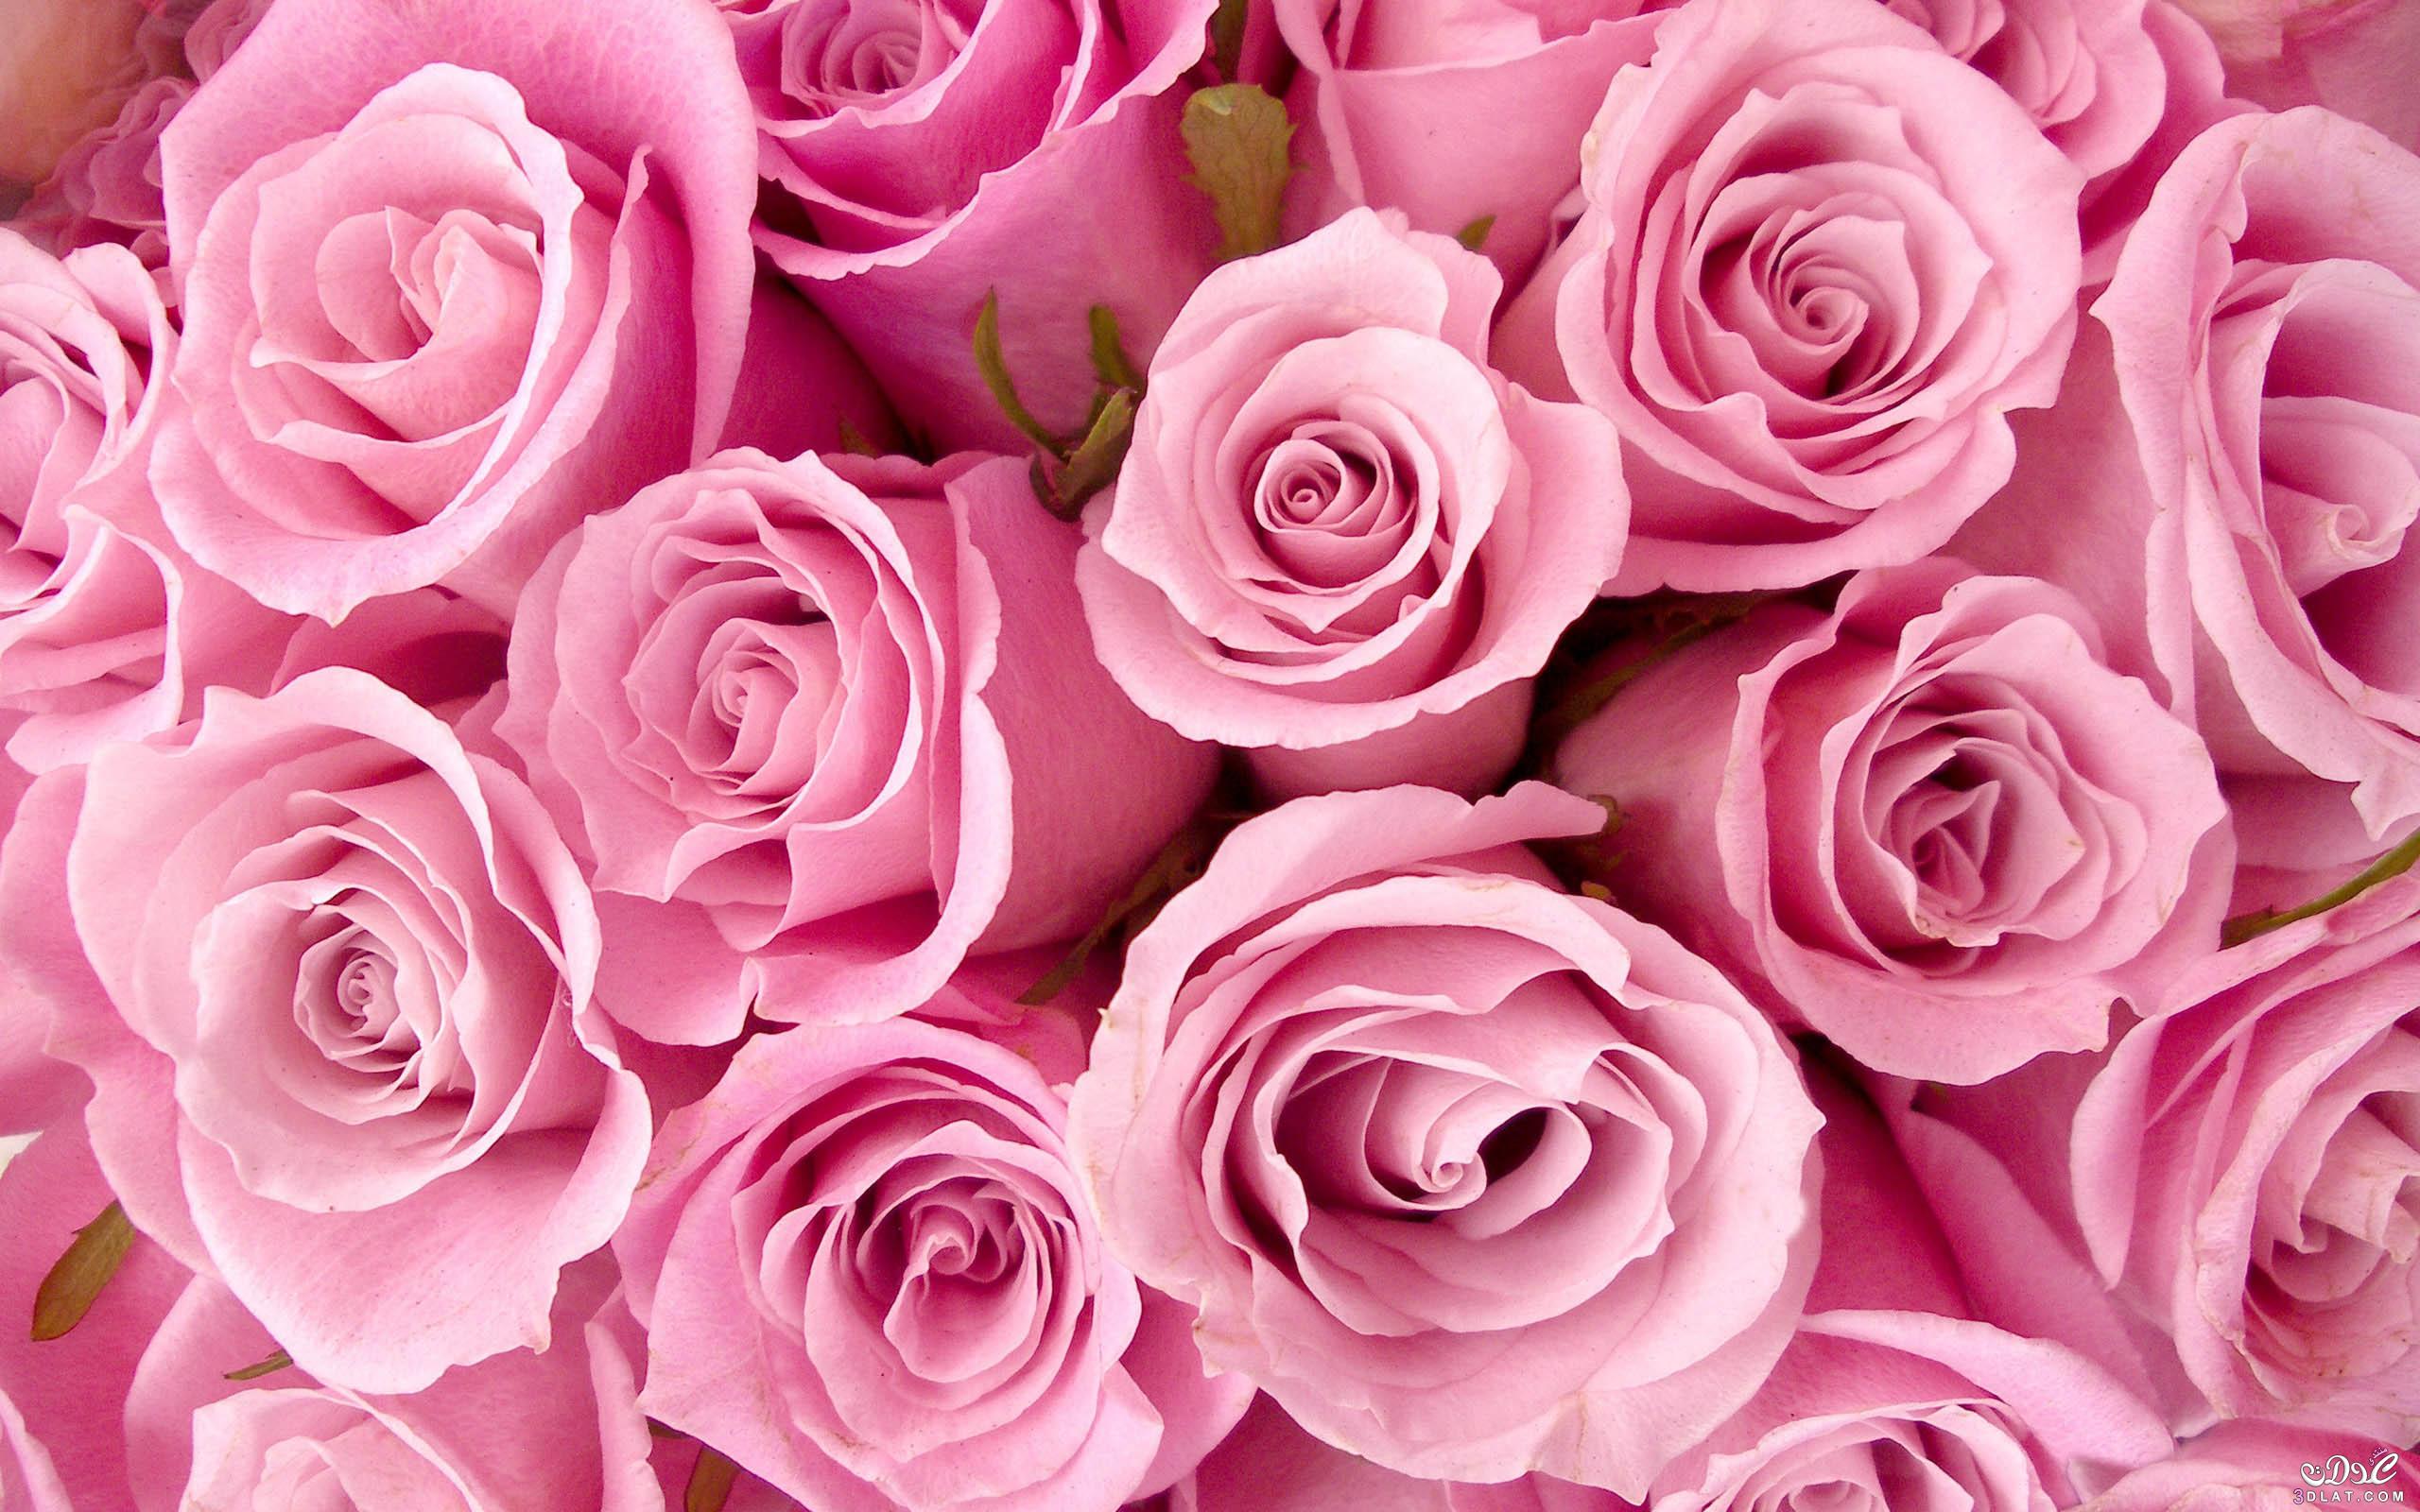 فوائد الورد الجوري, تعرفي علي اهم فوائد الورد الجوري,استخدامات الورد الجوري للصحه